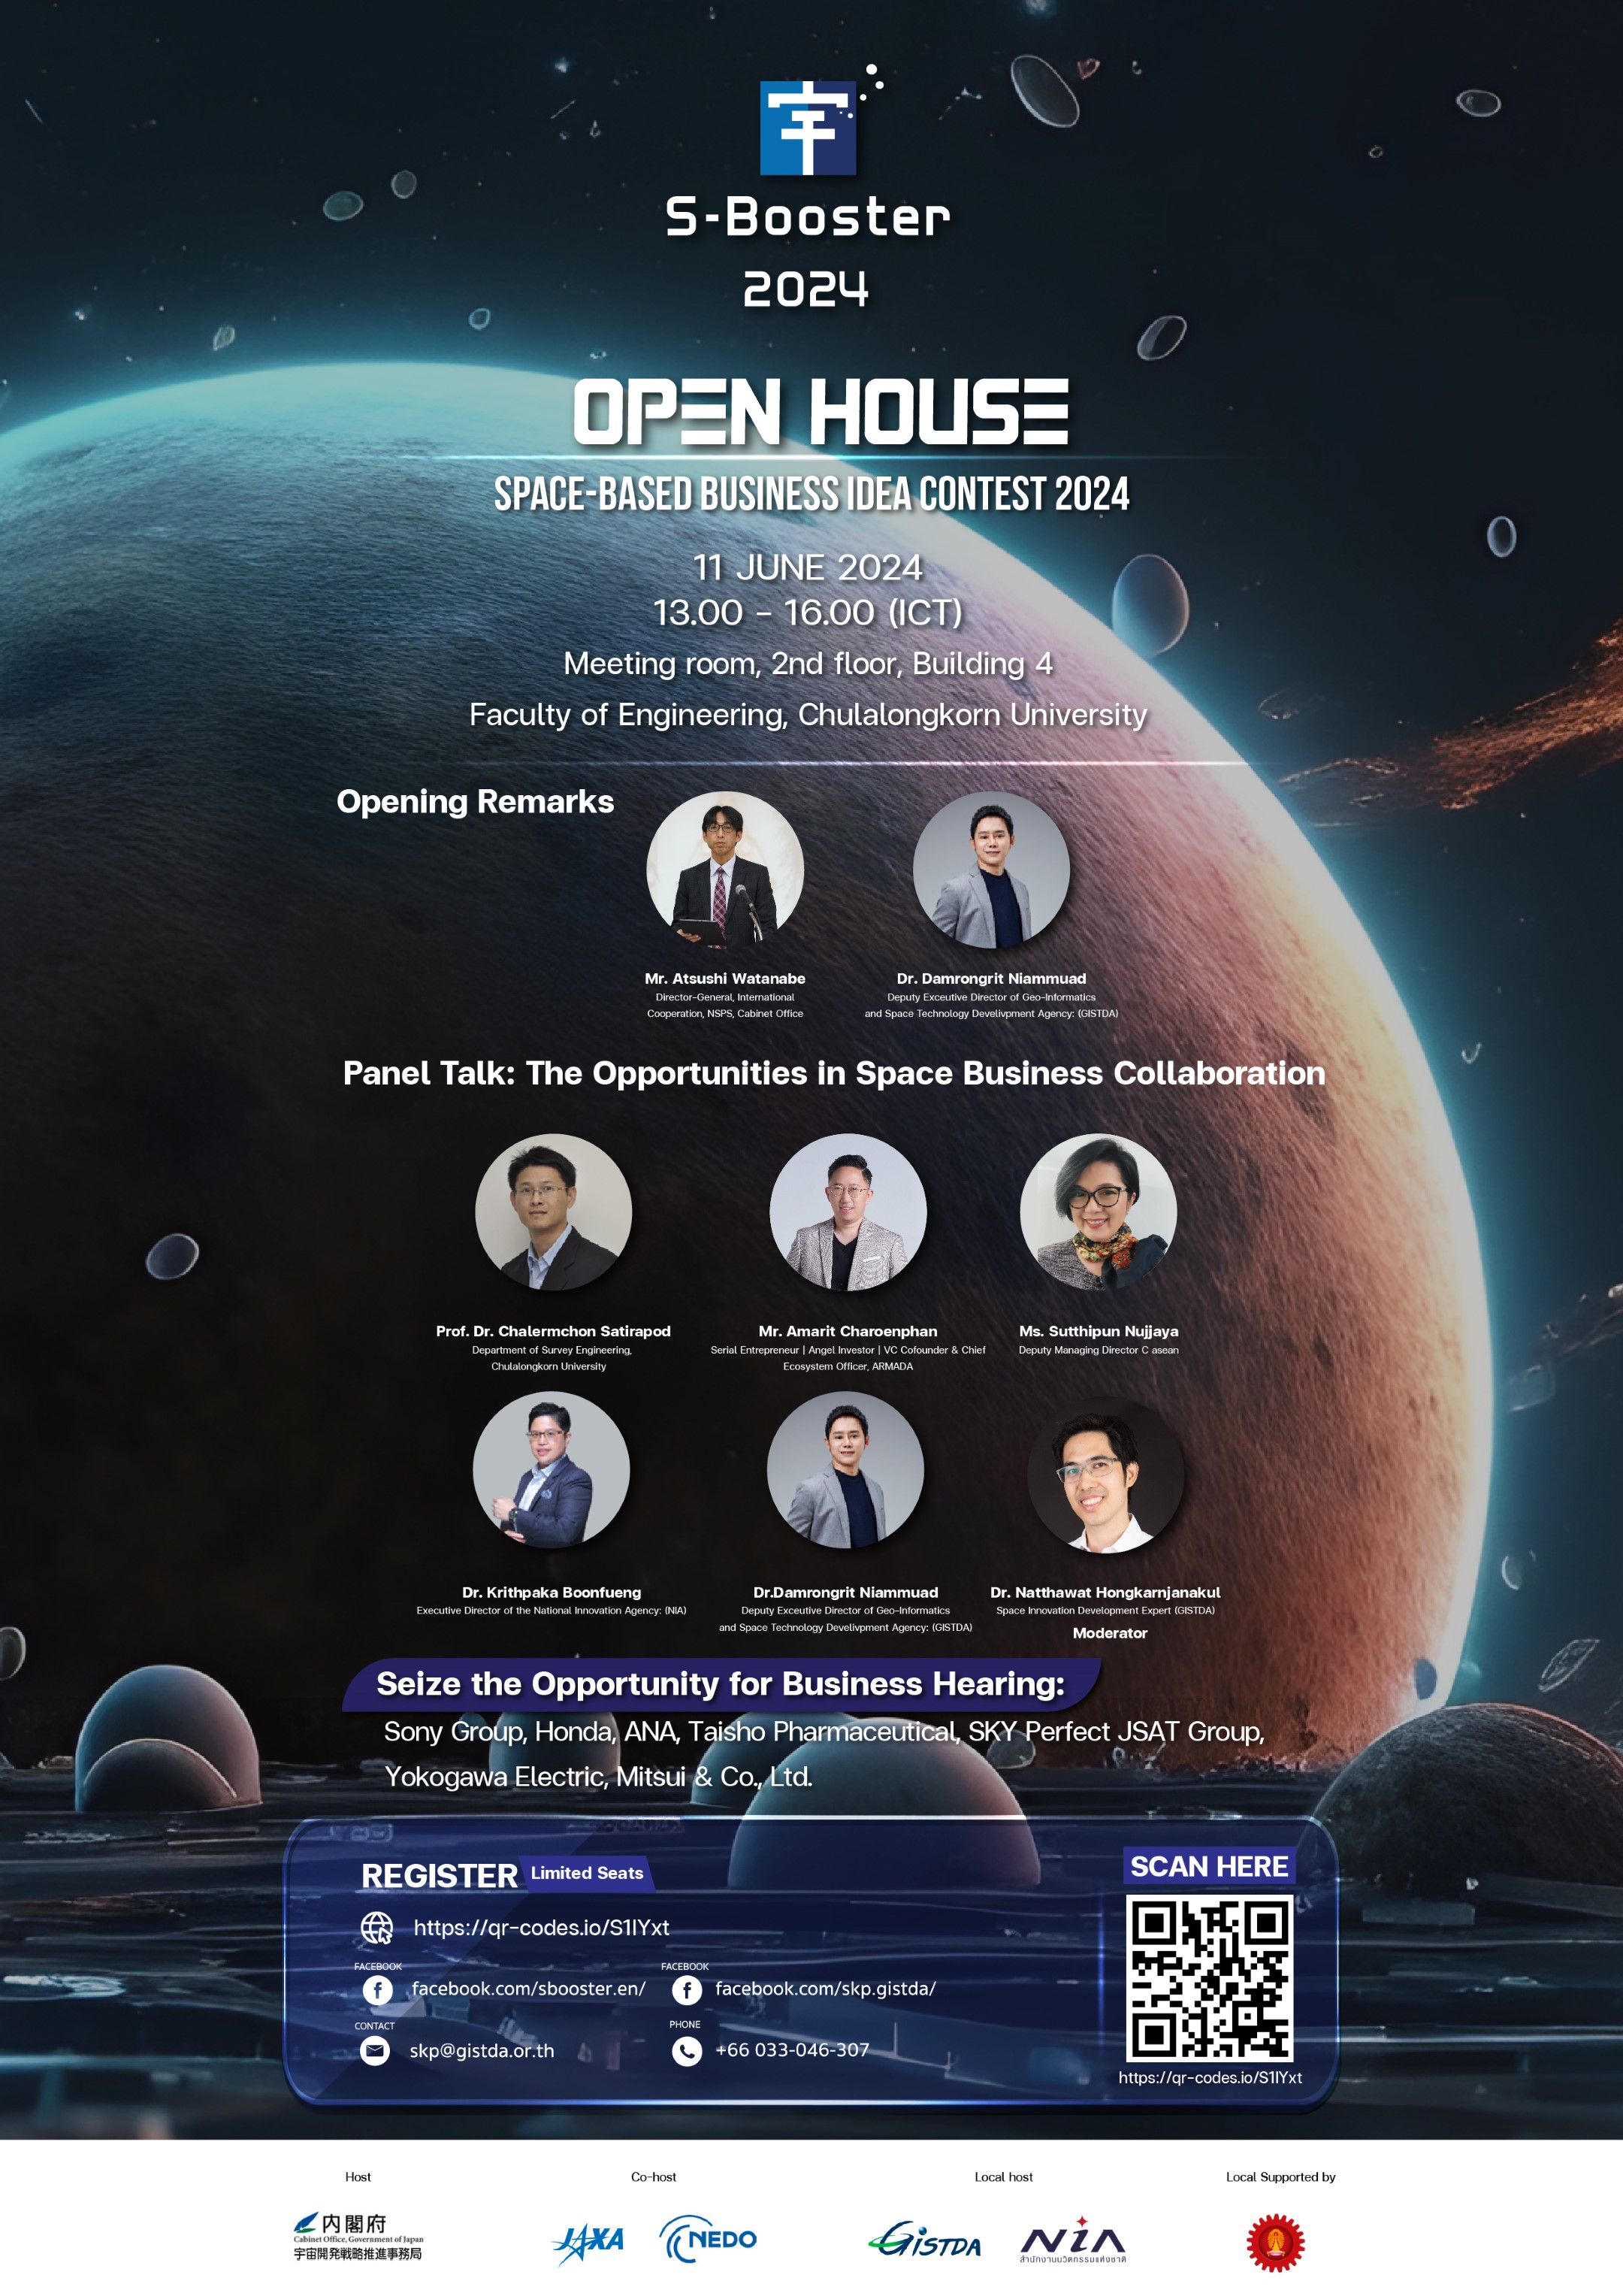 ภาพกิจกรรมS-Booster Open House 2024 เชิญเข้าร่วมกิจกรรมแนะแนวโครงการแข่งขันไอเดียนวัตกรรมอวกาศ